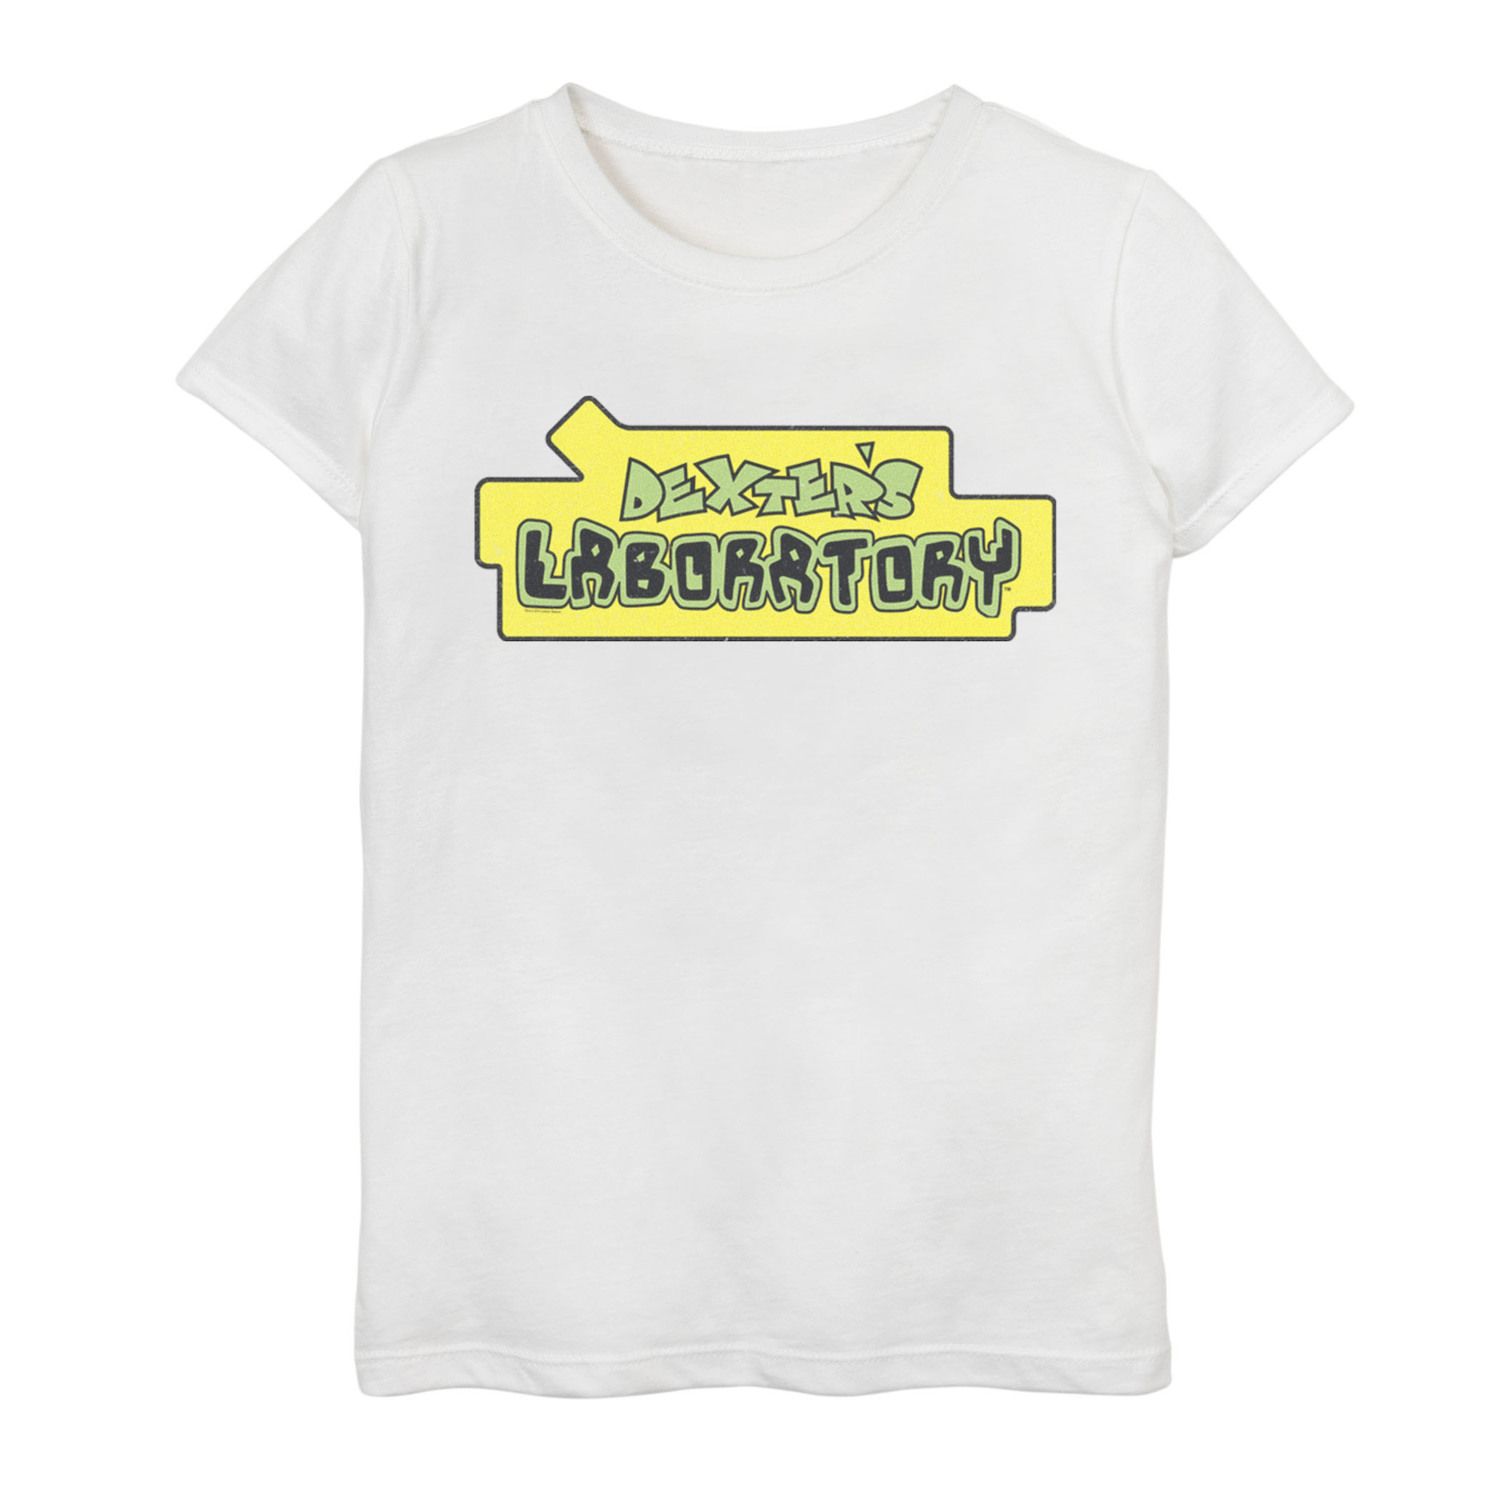 Футболка с оригинальным логотипом и графическим рисунком «Лаборатория Декстера» для девочек 7–16 лет Cartoon Network cartoon crown